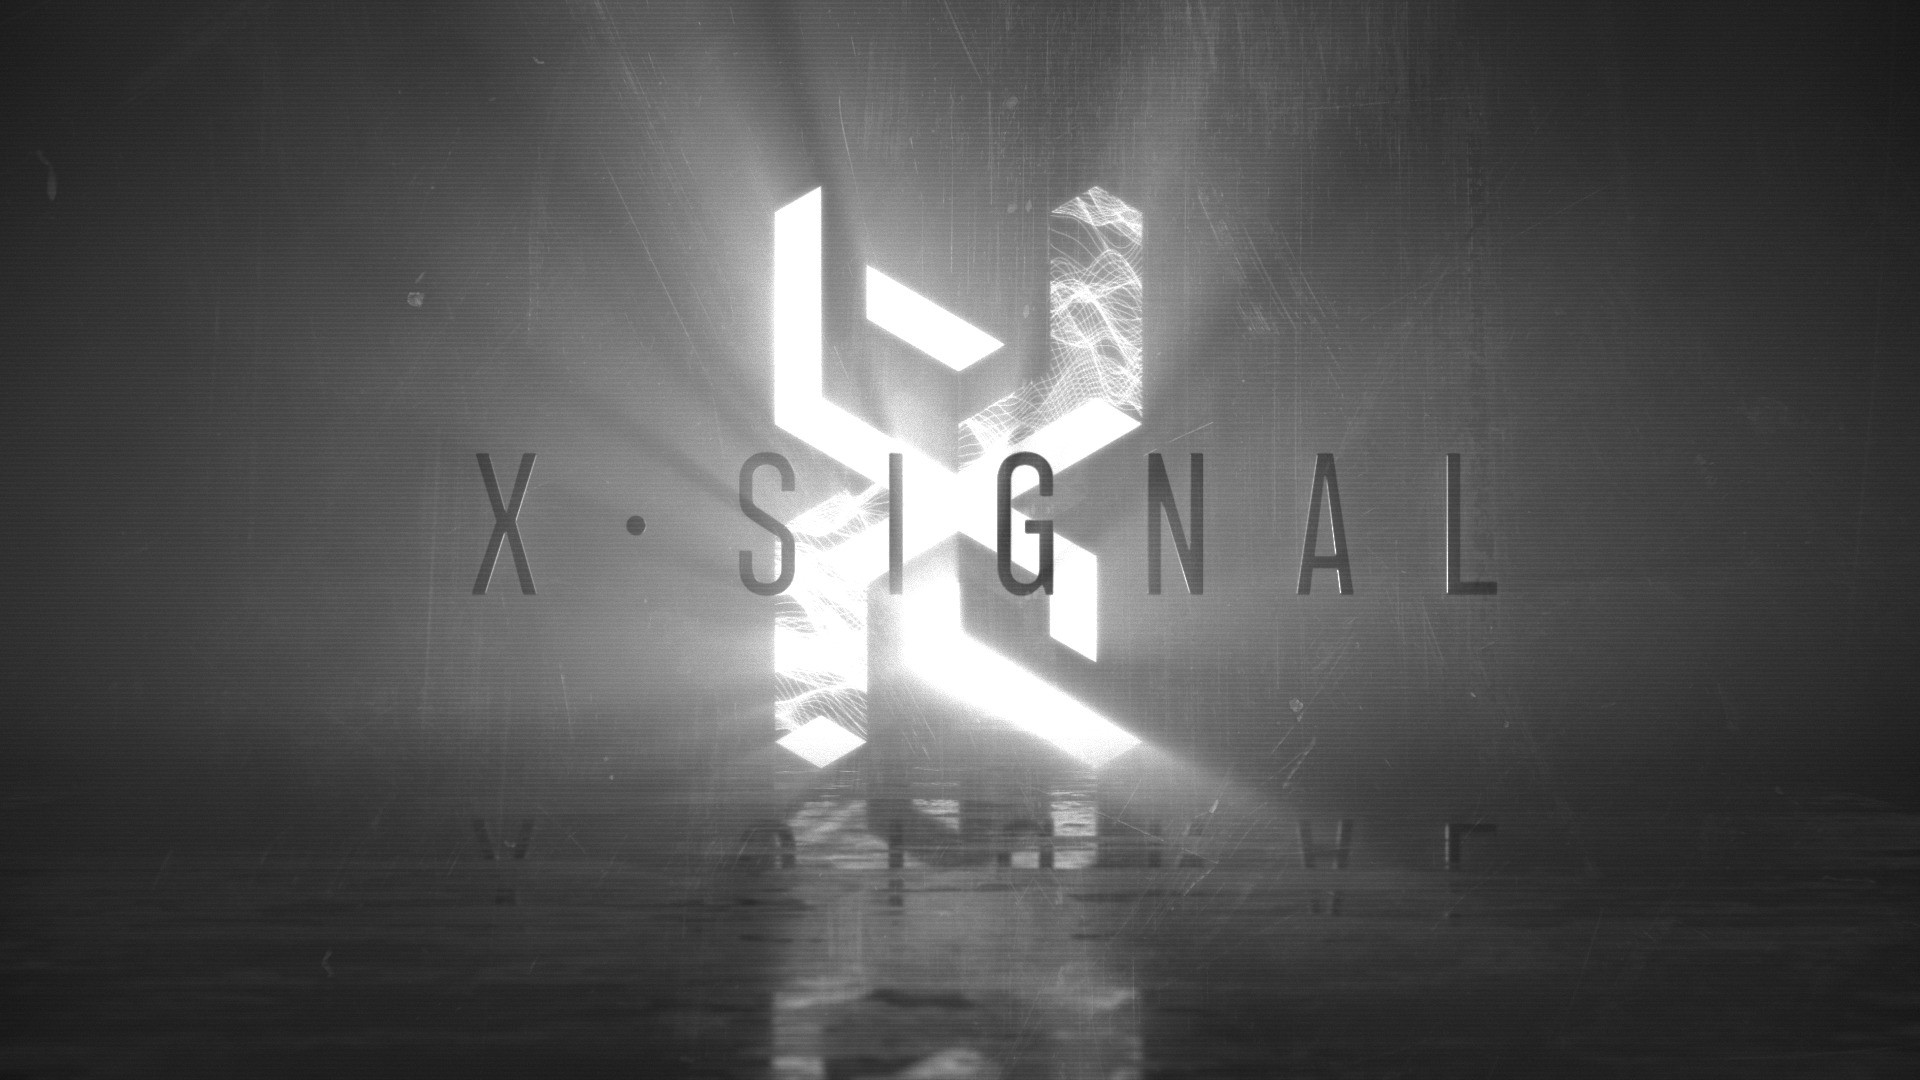 X Signal - Hãng Thu Âm Dành Cho Cộng Đồng Bass/Electronic và Hiphop Việt Nam